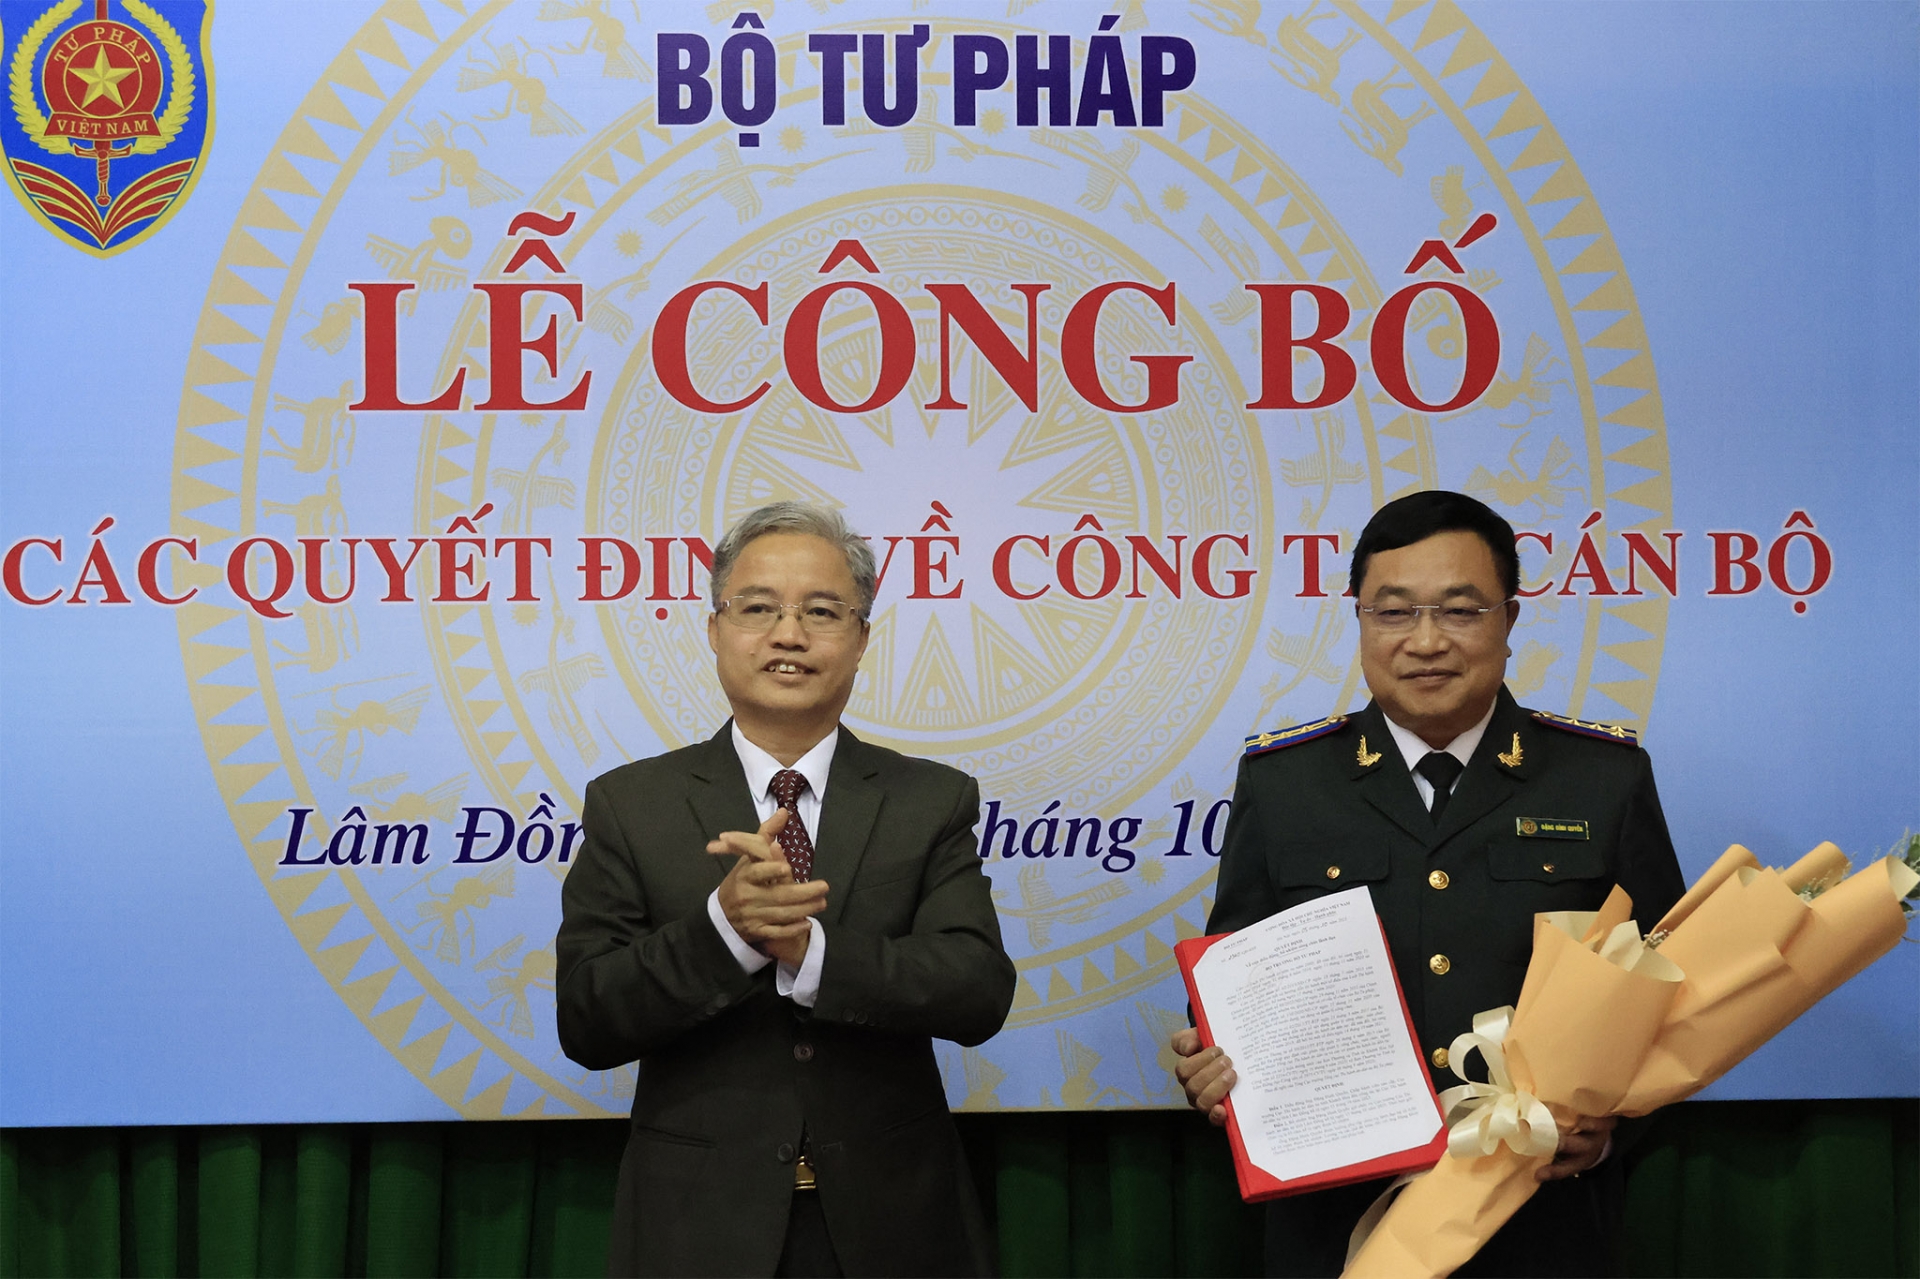 Tổng cục trưởng Tổng cục THADS Nguyễn Quang Thái trao quyết định cho tân Cục trưởng Cục THADS tỉnh Lâm Đồng Đặng Đình Quyền 